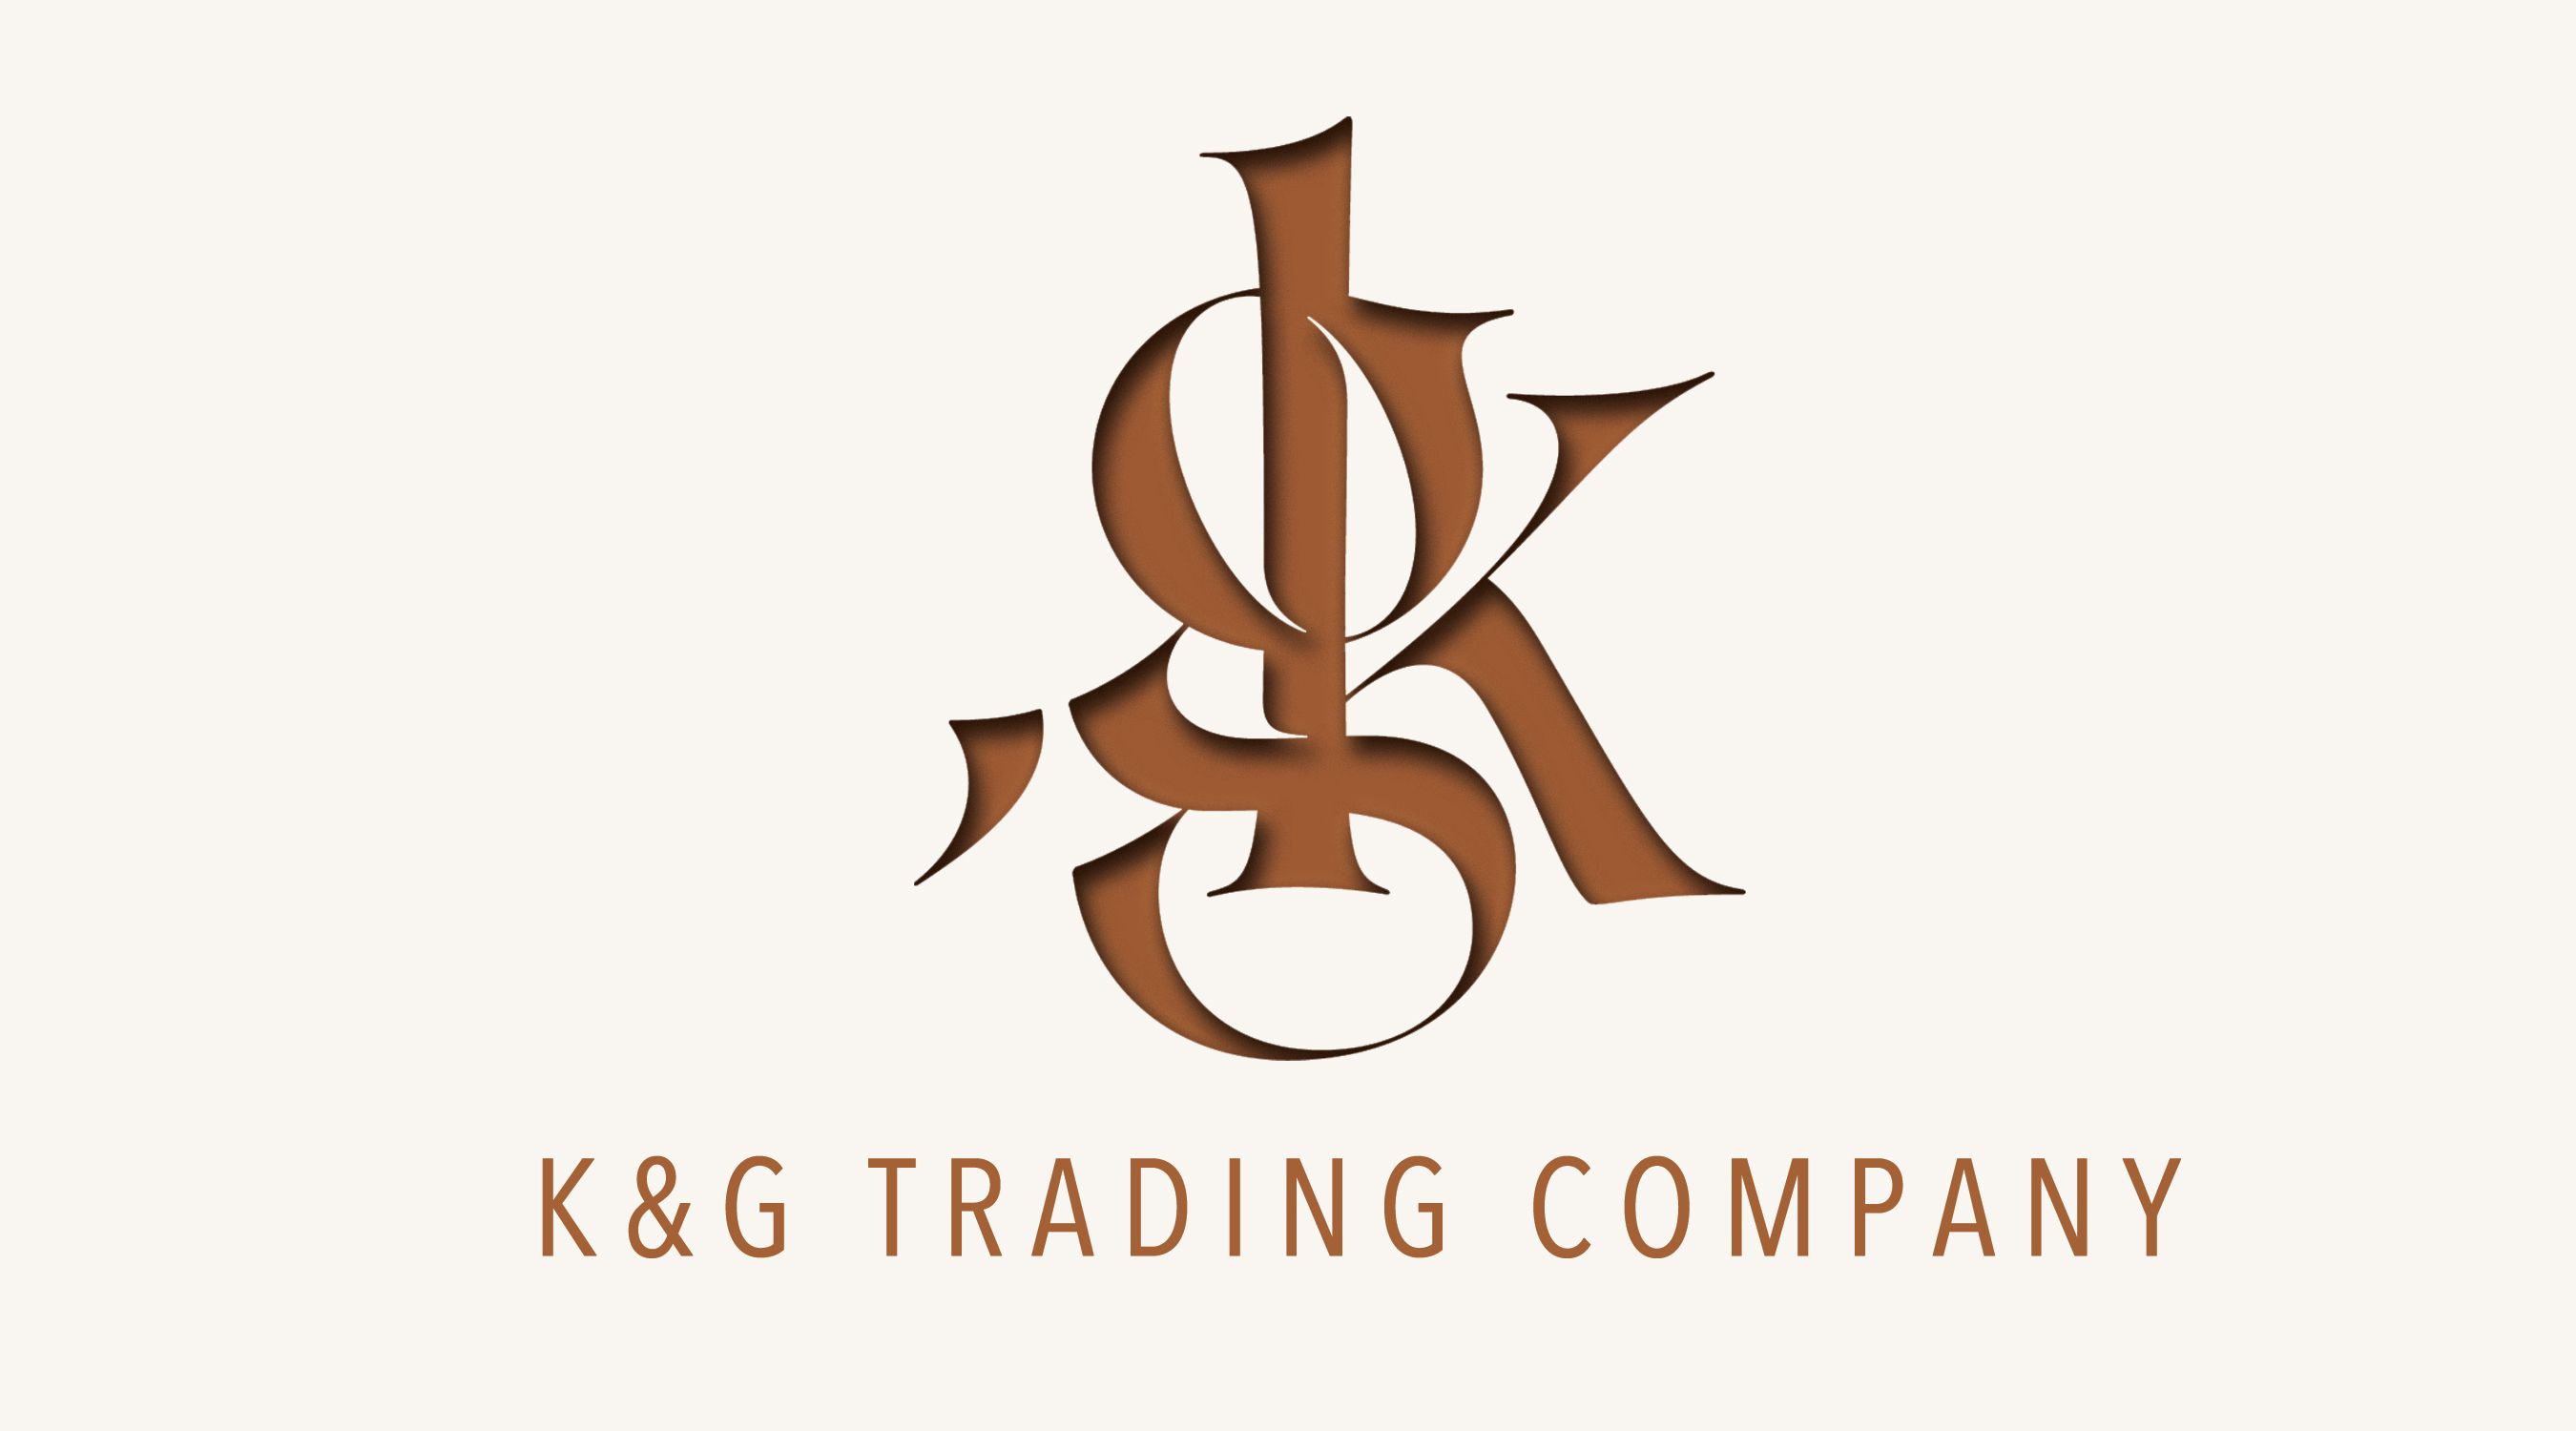 K&G Trading Company